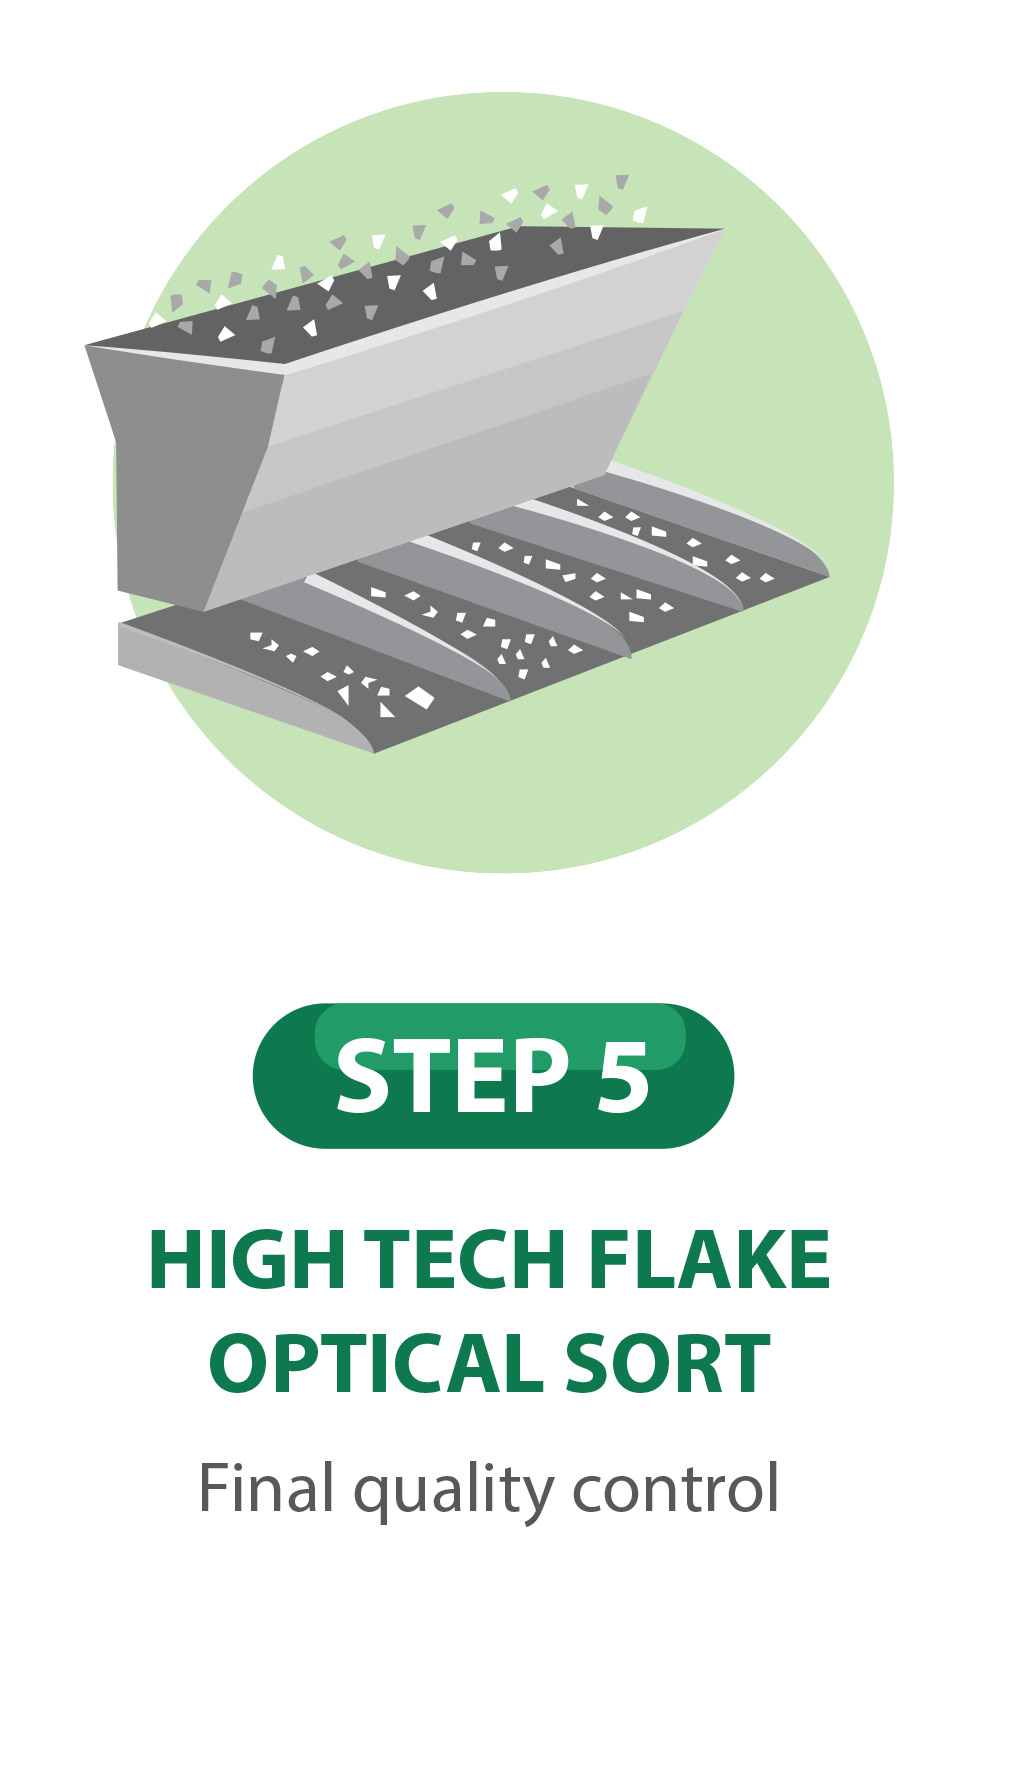 Step 5 High Tech Flake Optical Sort